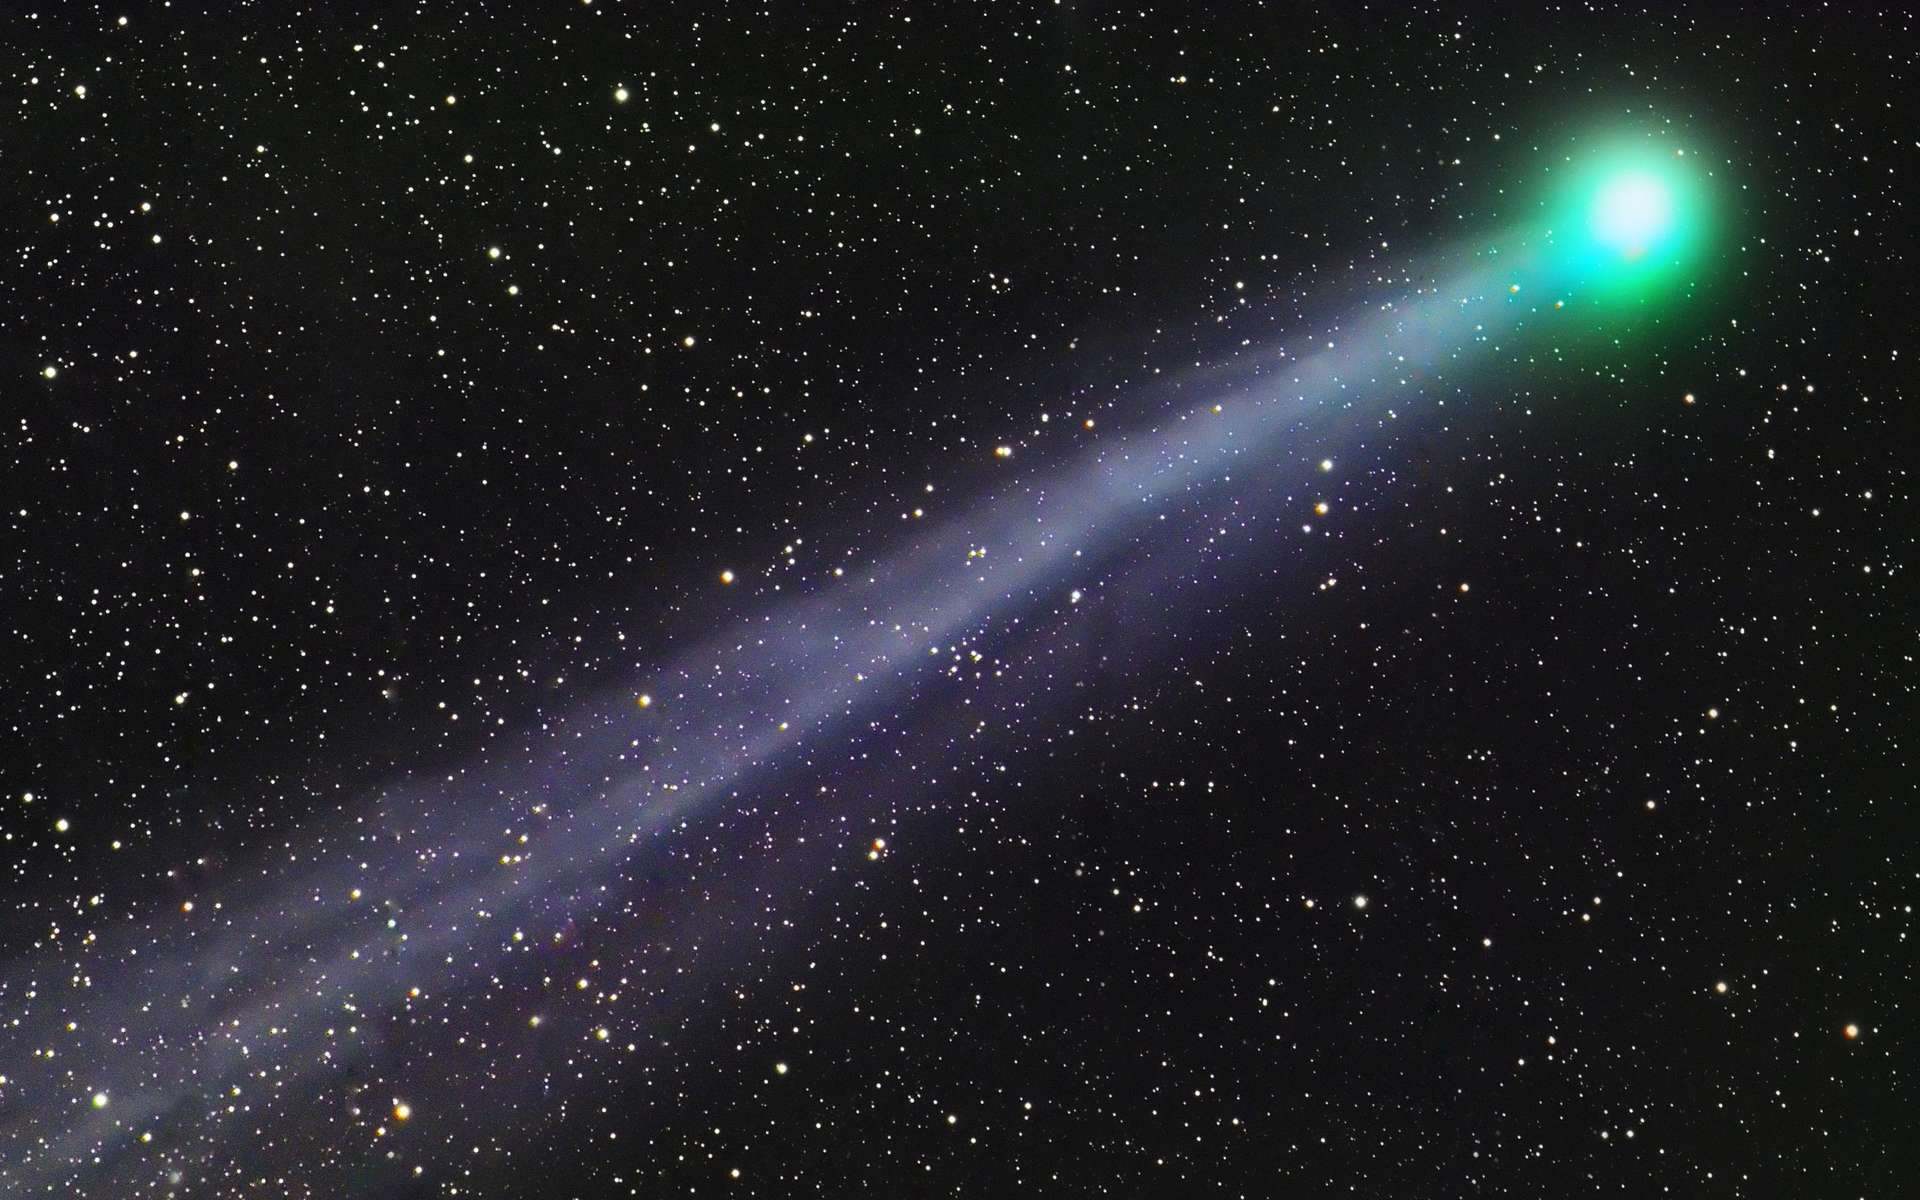 La queue d'une comète dans un autre Système solaire aurait été observée passant devant son étoile